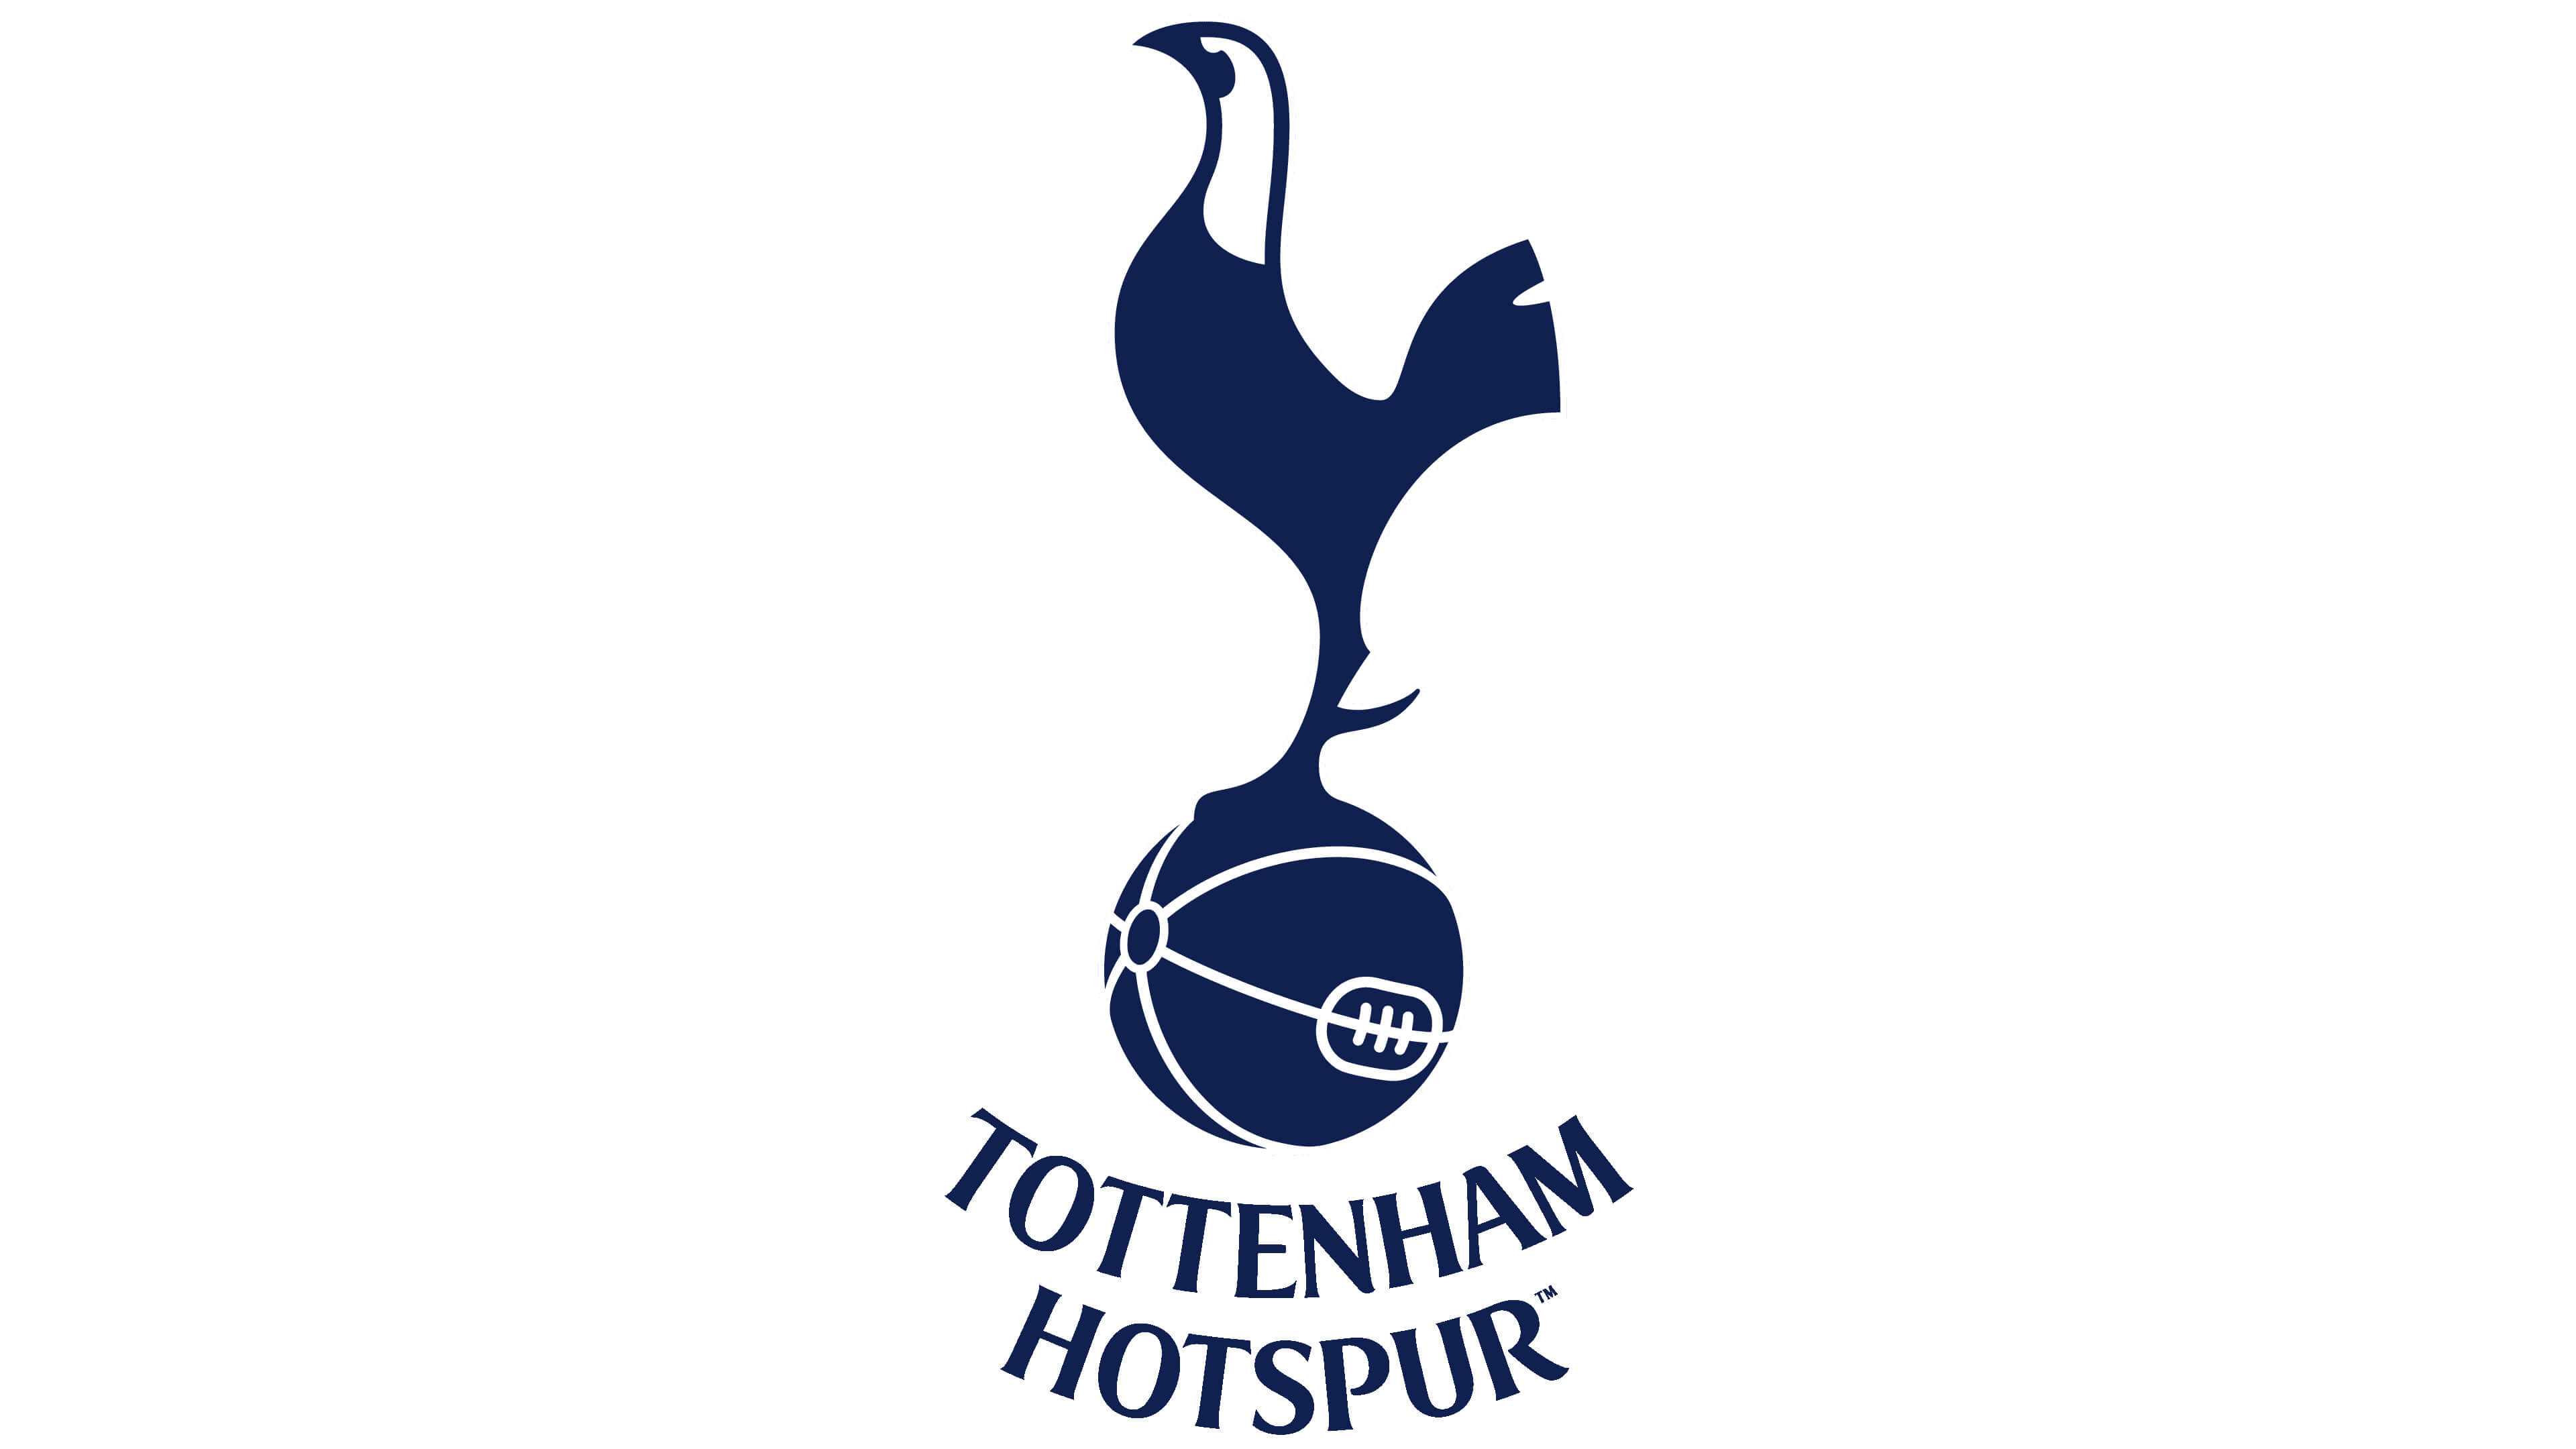 Historical Crests: Tottenham Hotspur FC –